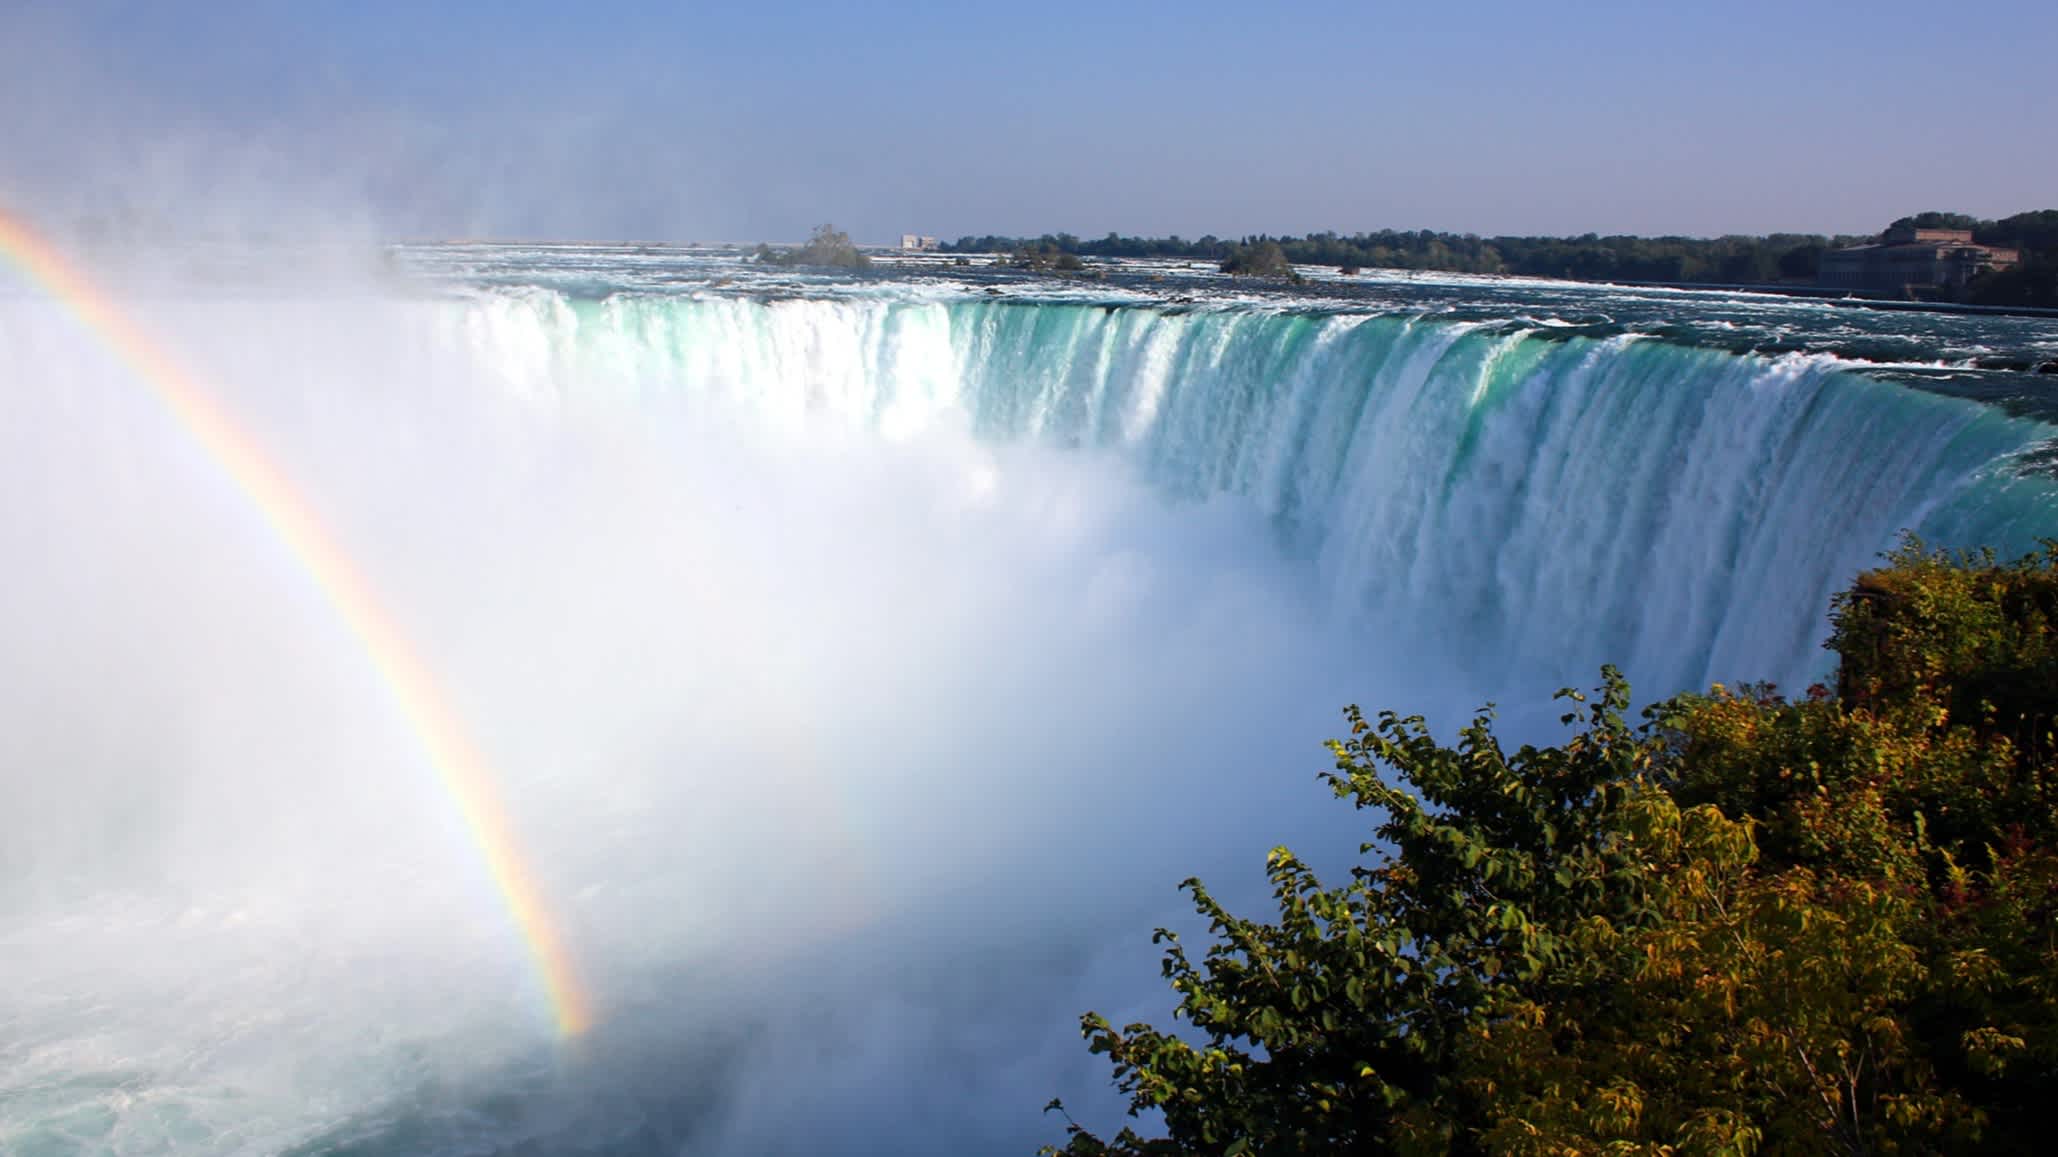 Les chutes du Niagara du côté canadien avec arc-en-ciel